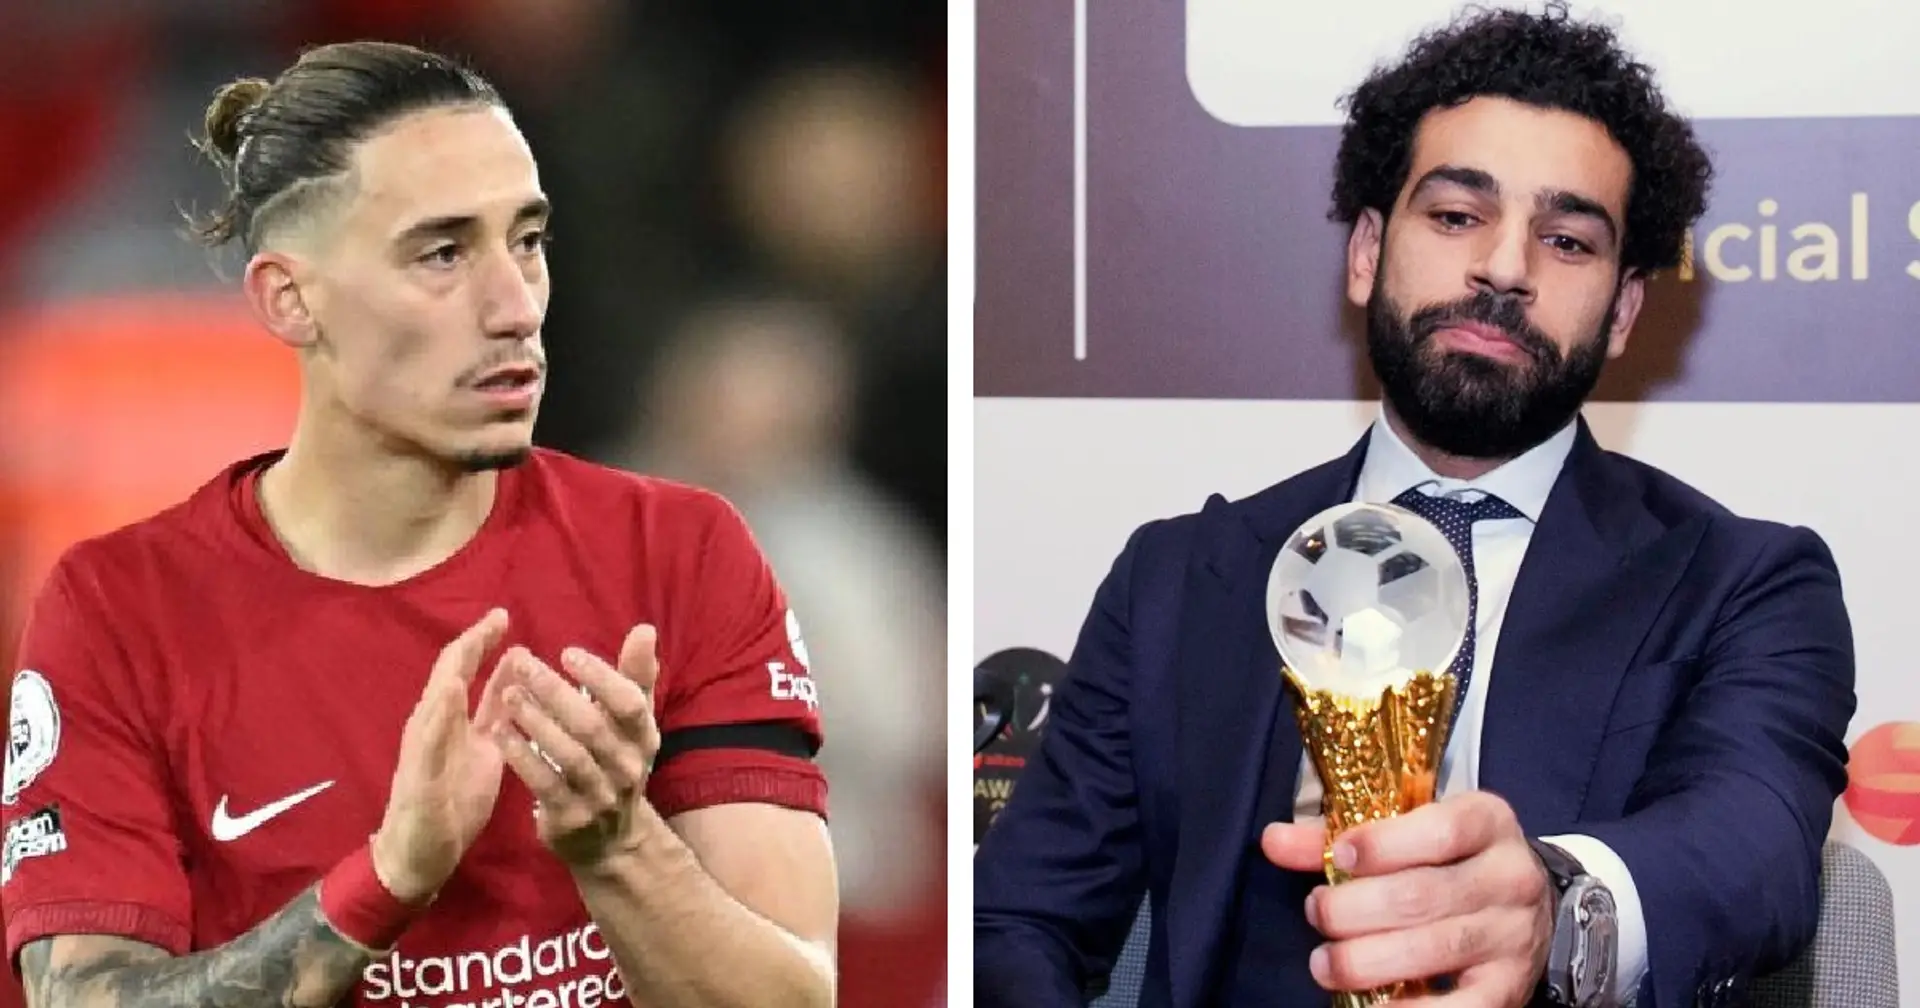 Salah misses out on CAF award & 2 other under-radar Liverpool stories